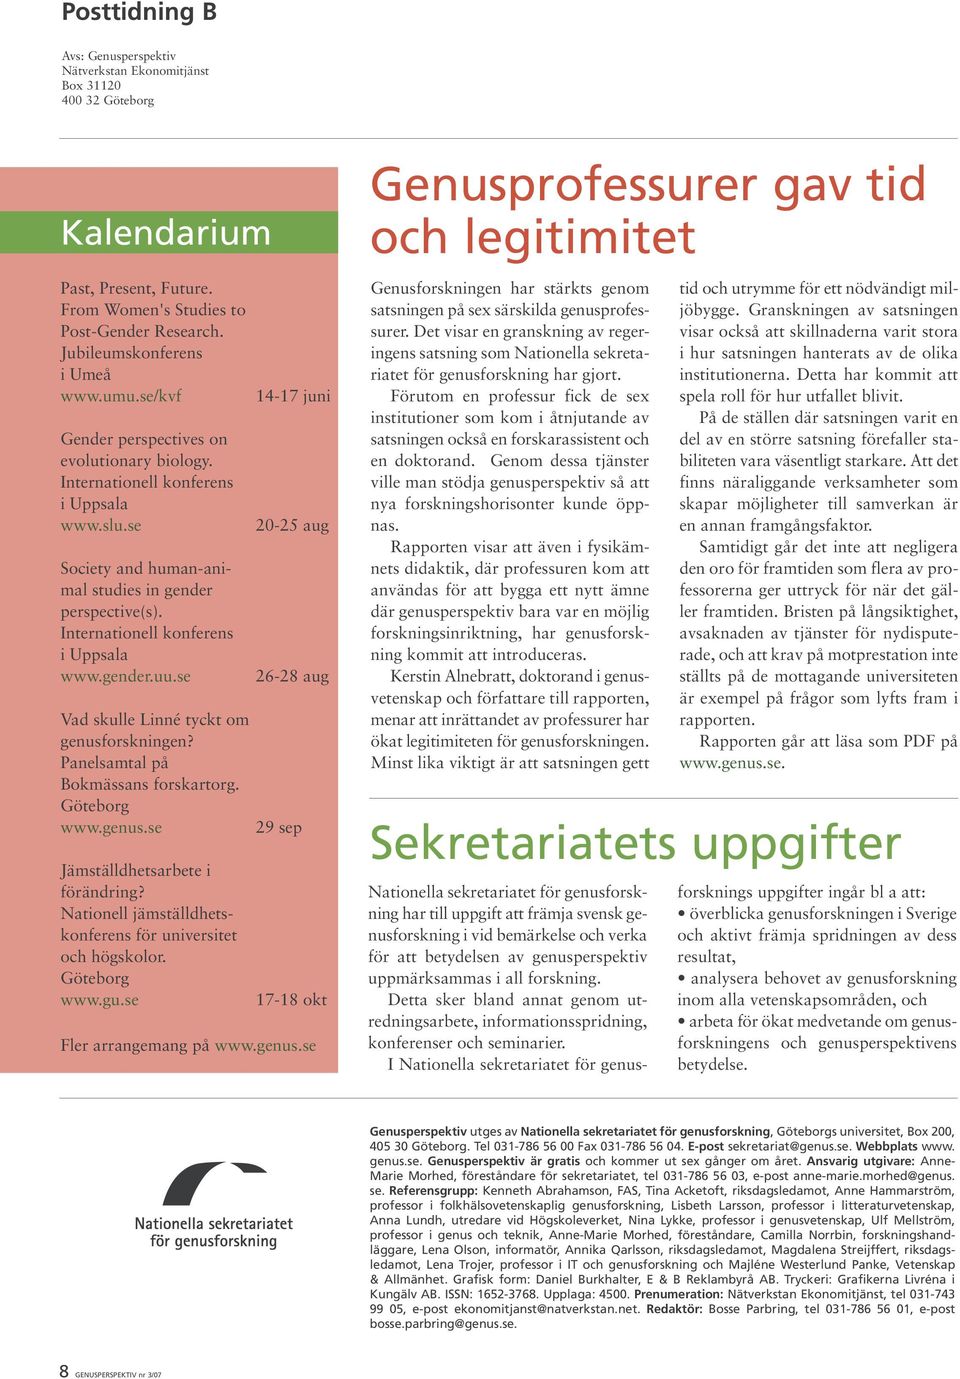 se Vad skulle Linné tyckt om genusforskningen? Panelsamtal på Bokmässans forskartorg. Göteborg www.genus.se Jämställdhetsarbete i förändring?